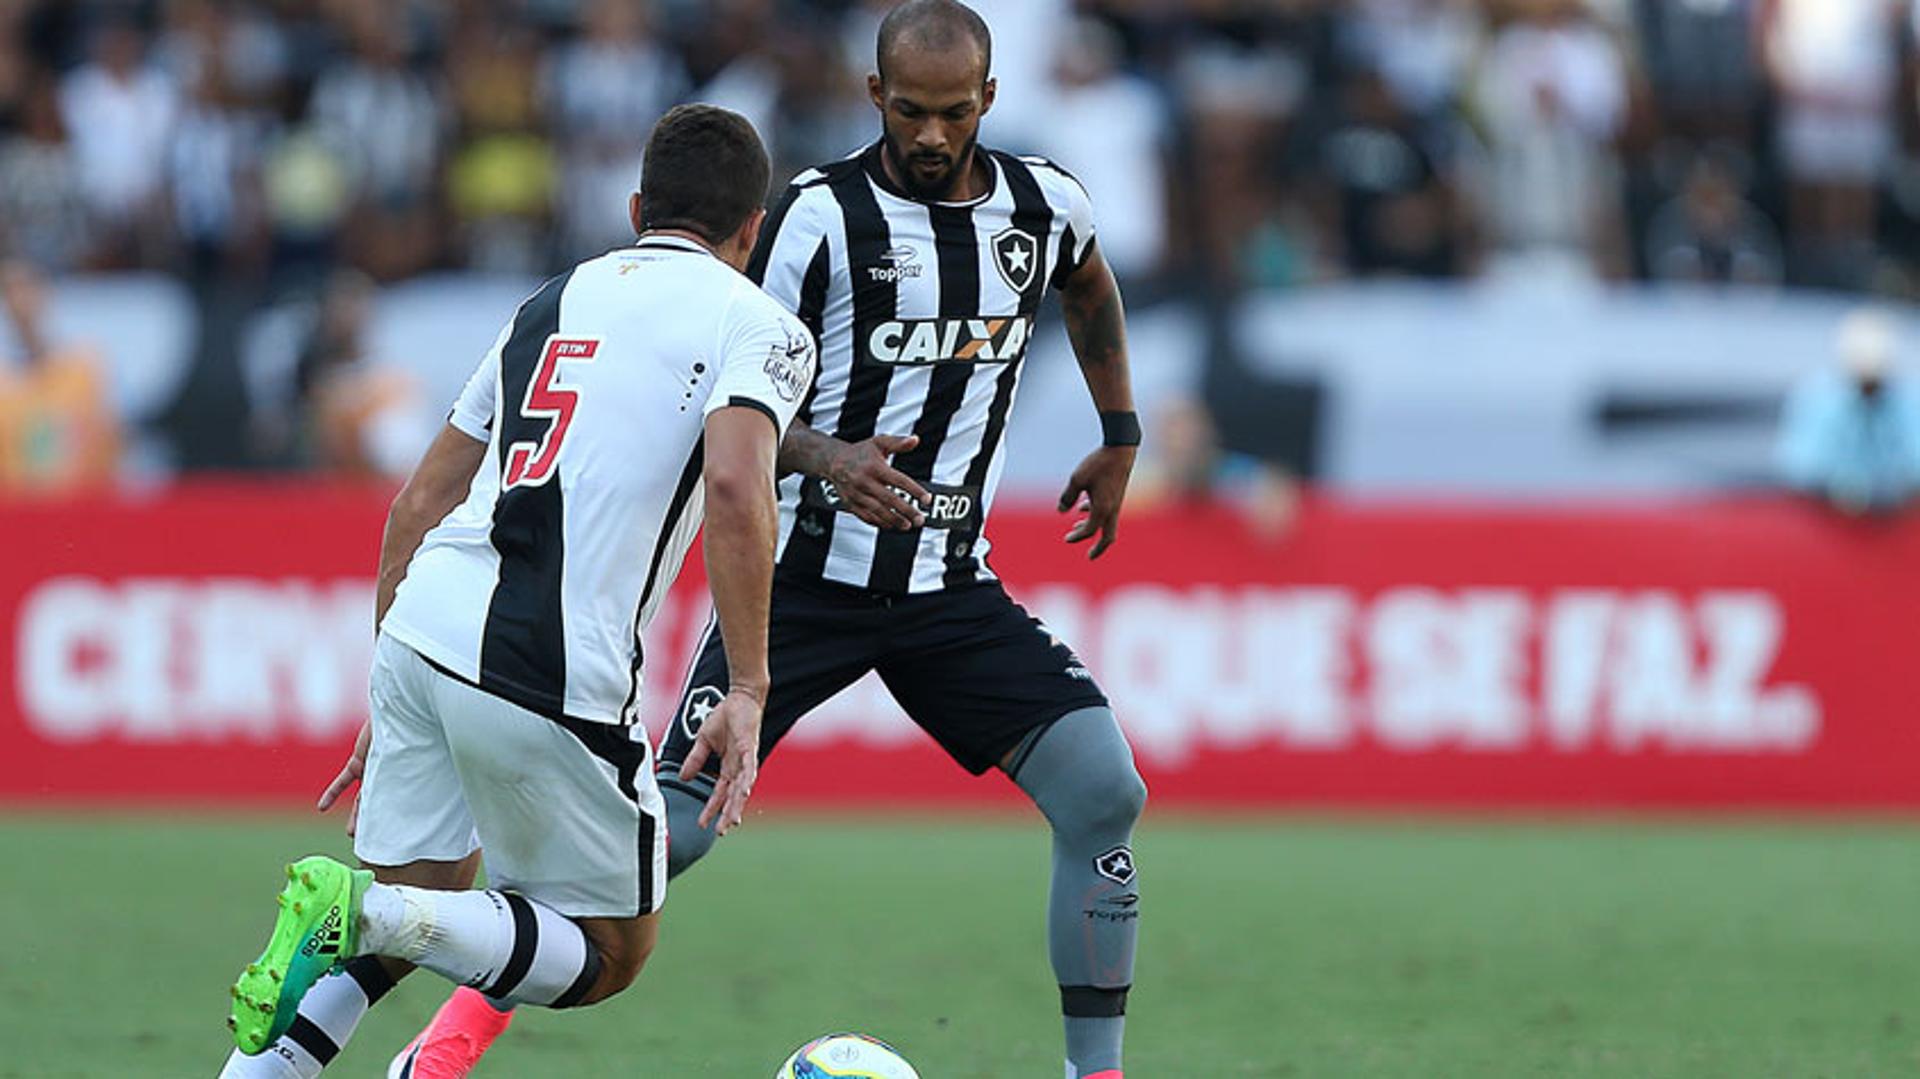 Bruno Silva era o único titular do Botafogo em campo na final da Taça Rio, neste domingo